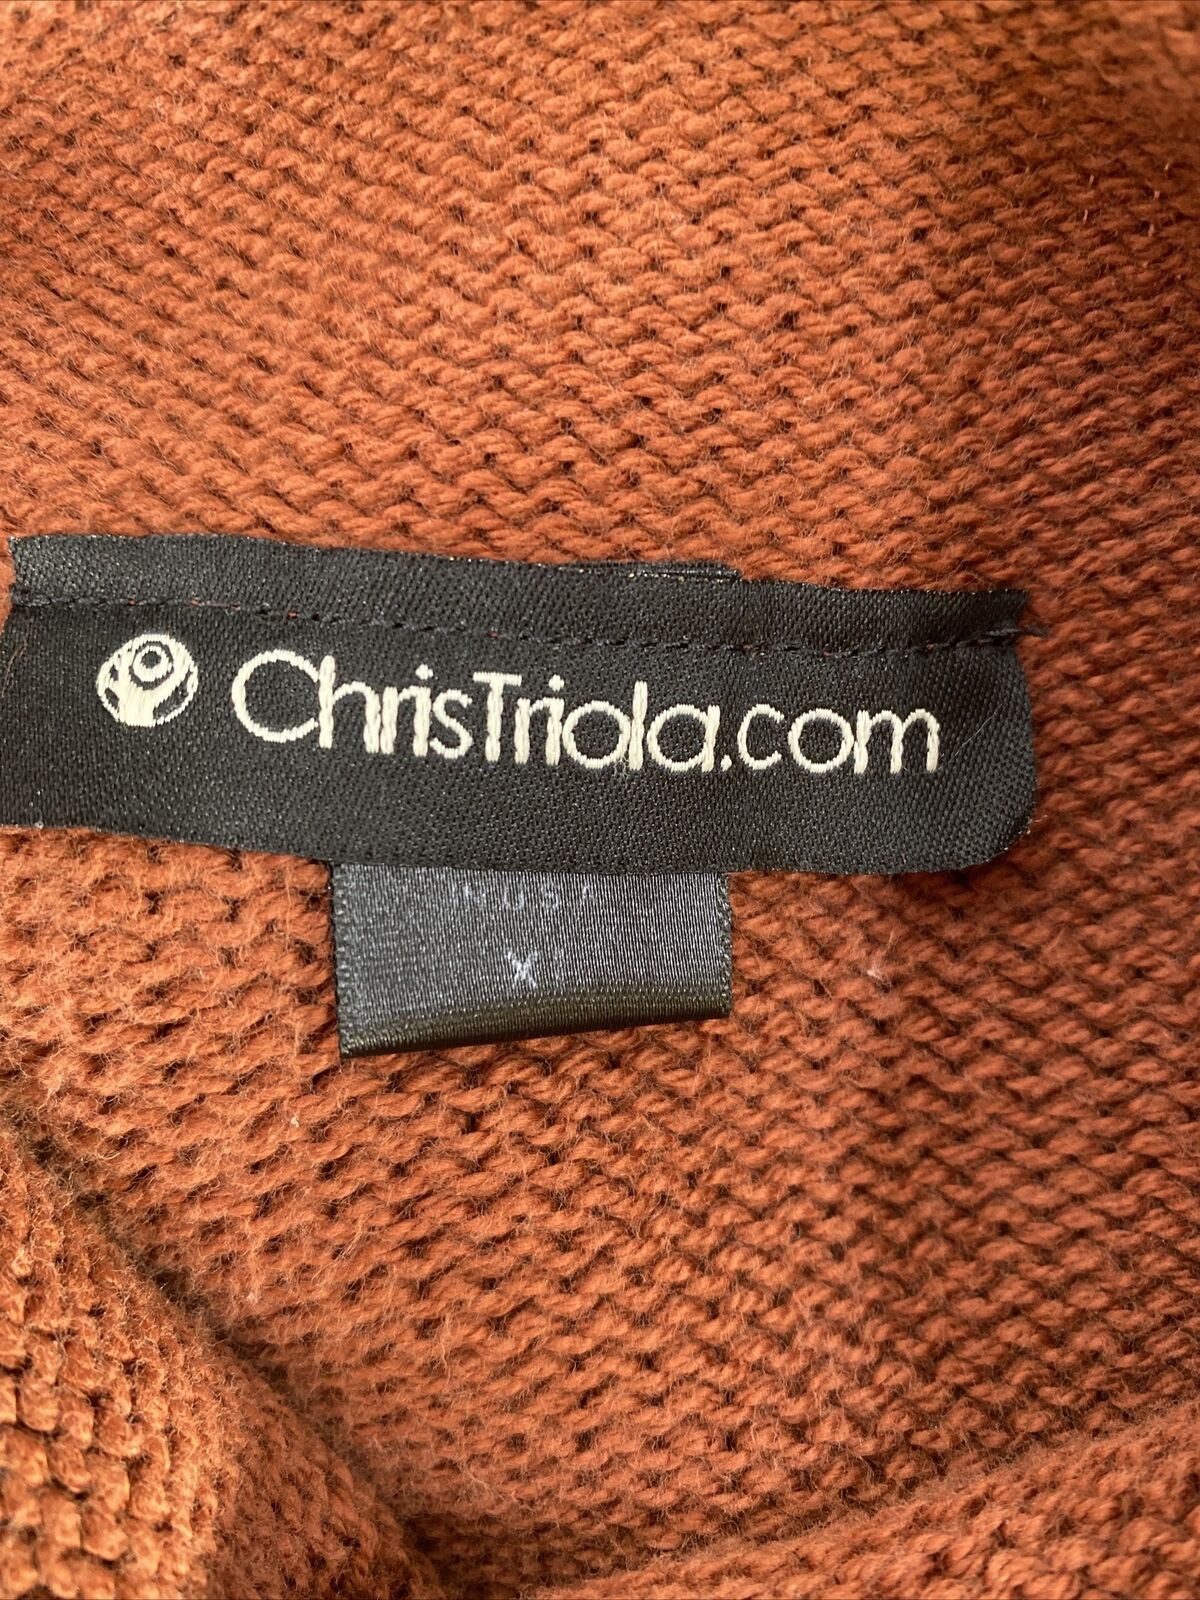 Chris Triola Suéter de cuello simulado de manga larga de algodón marrón para mujer - XL